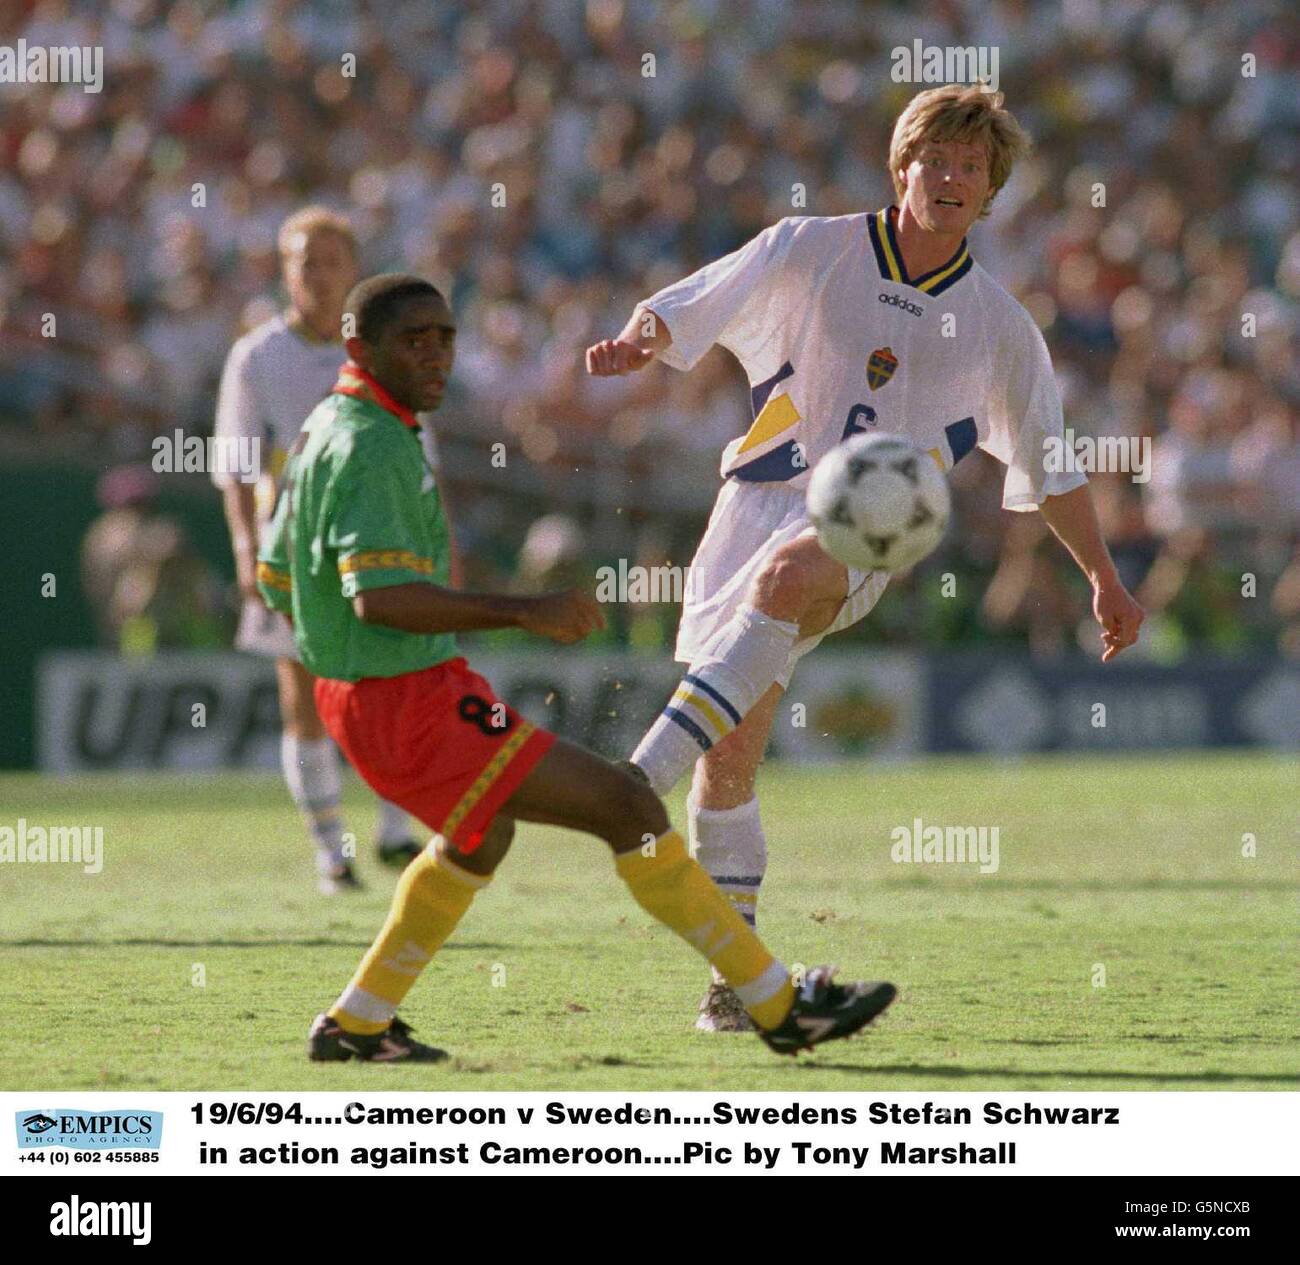 Calcio - Coppa del mondo FIFA USA 1994 - Gruppo B - Svezia contro Camerun - Rose Bowl, Pasadena. Stefan Schwarz svedese in azione contro il Camerun Foto Stock